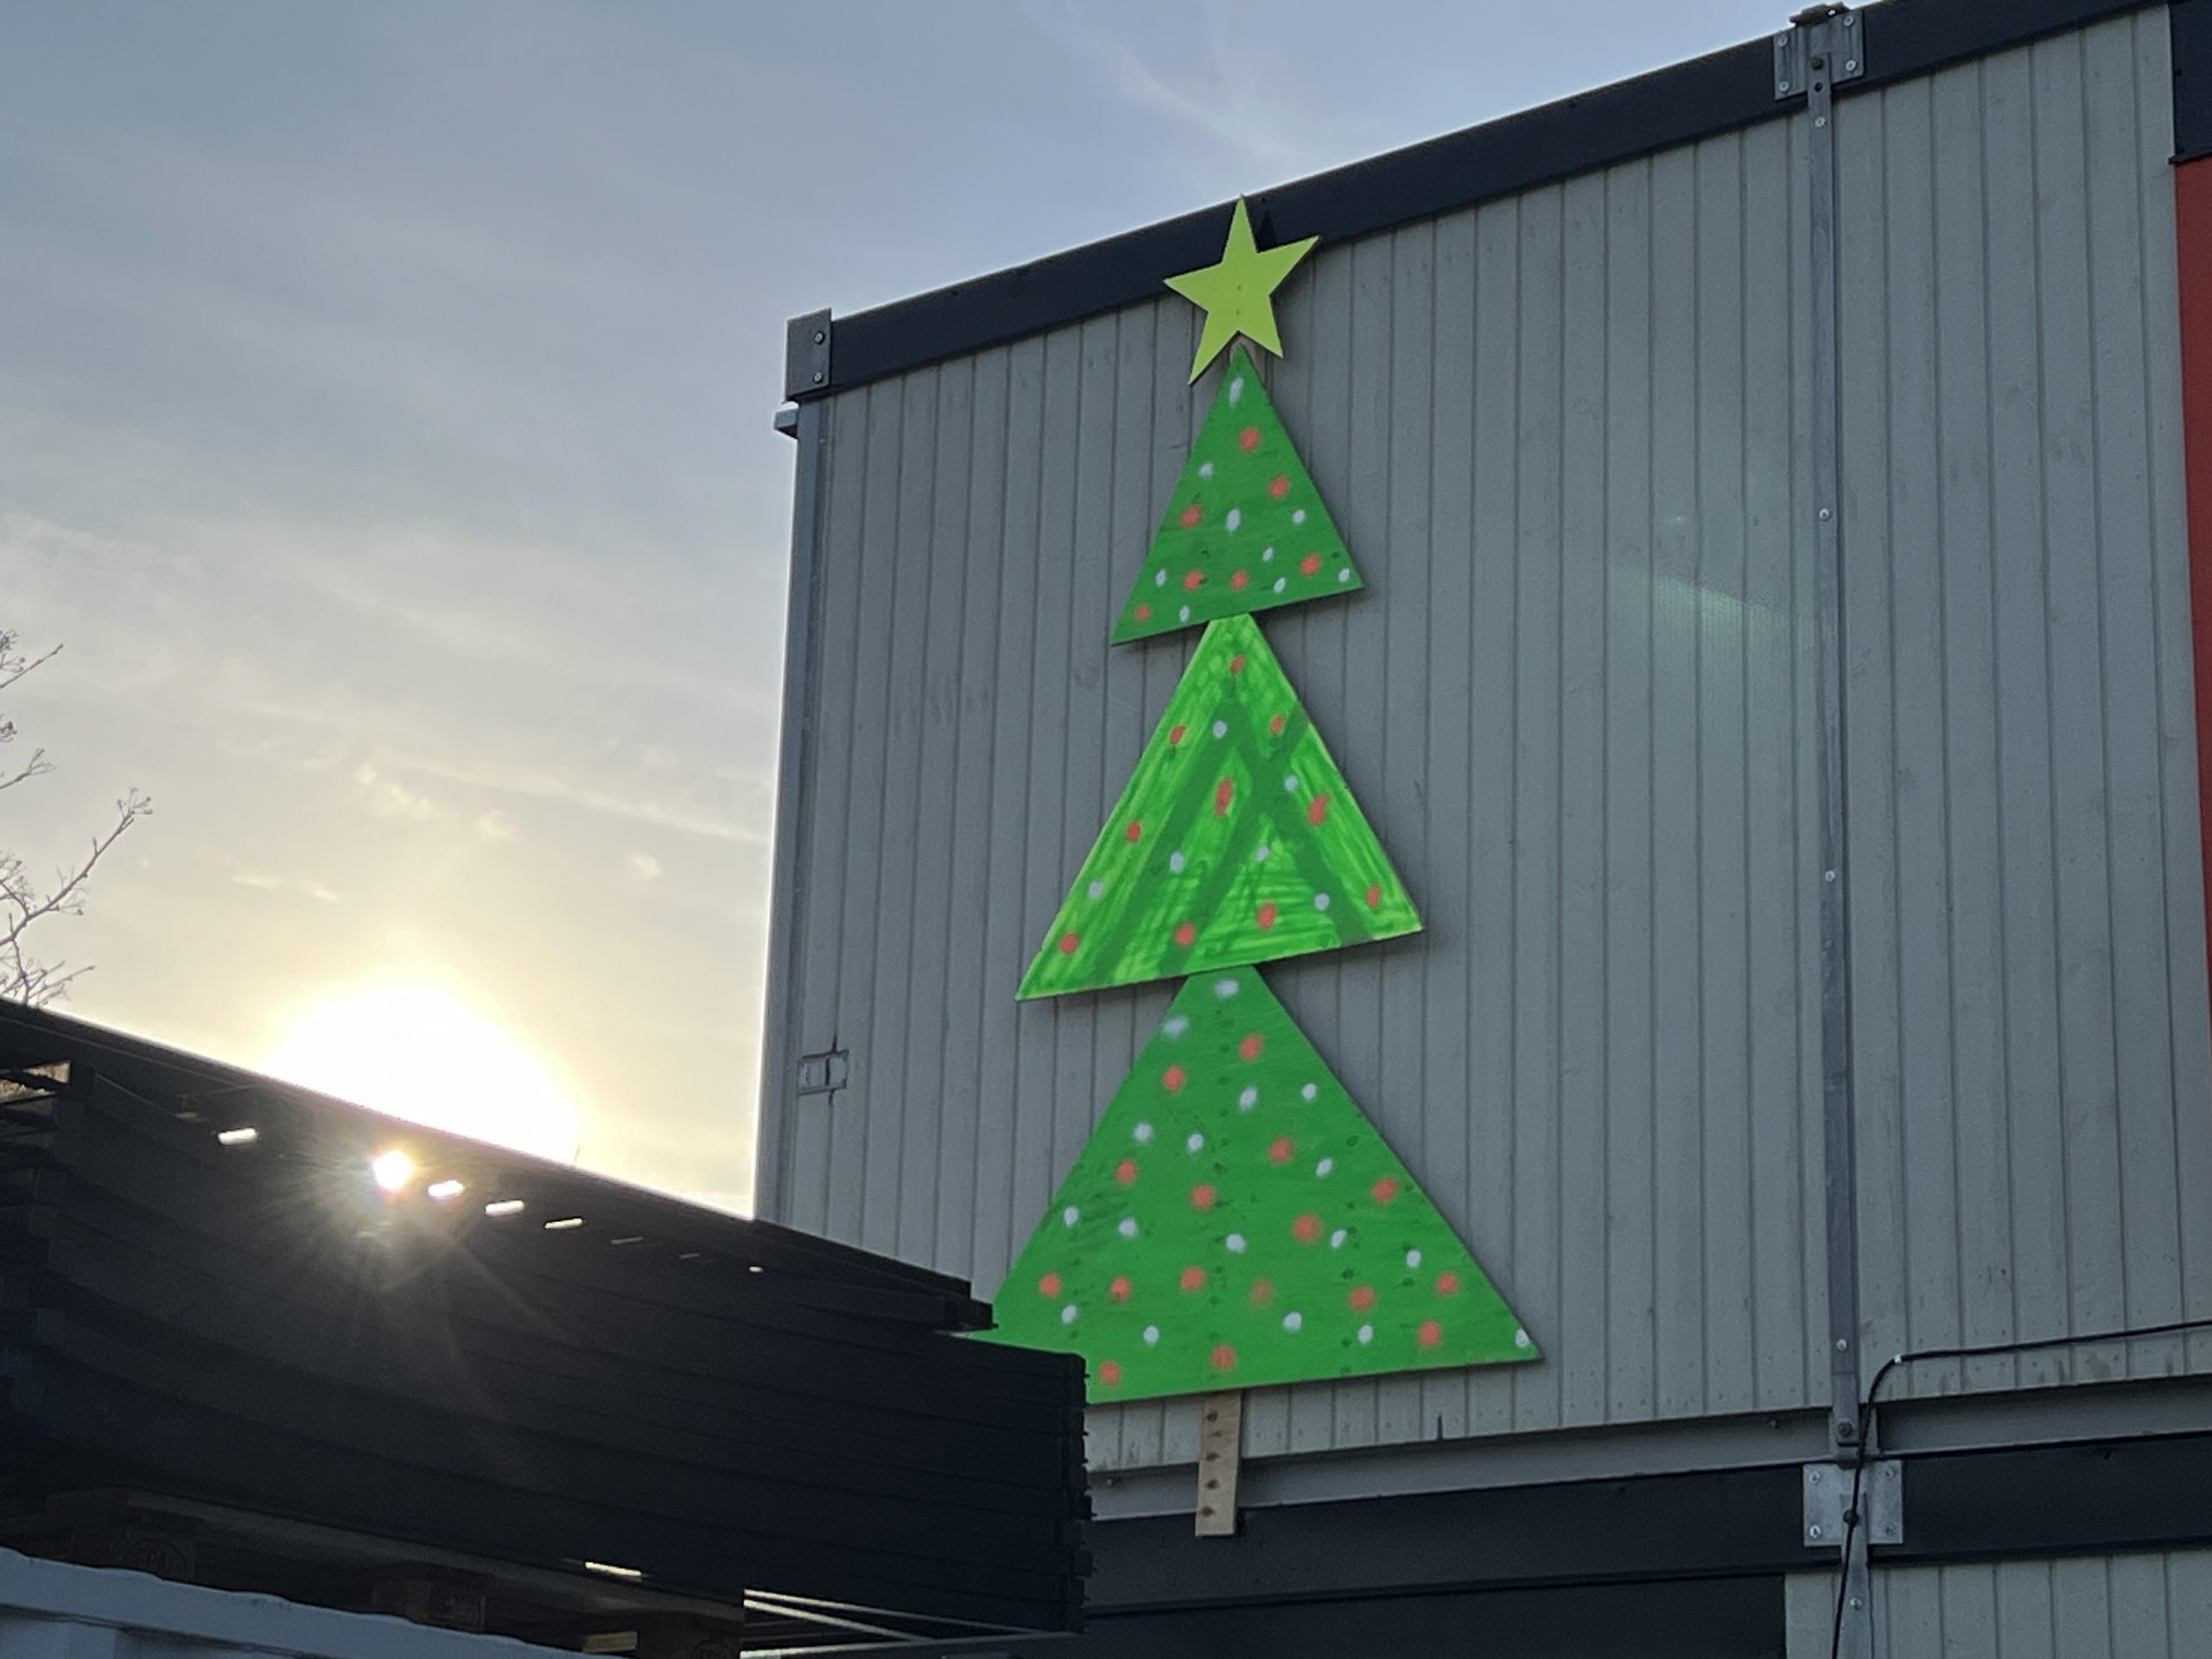 Byggboden är utsmyckad med en julgran i grön färg med kulörta kulor och en guldig stjärna